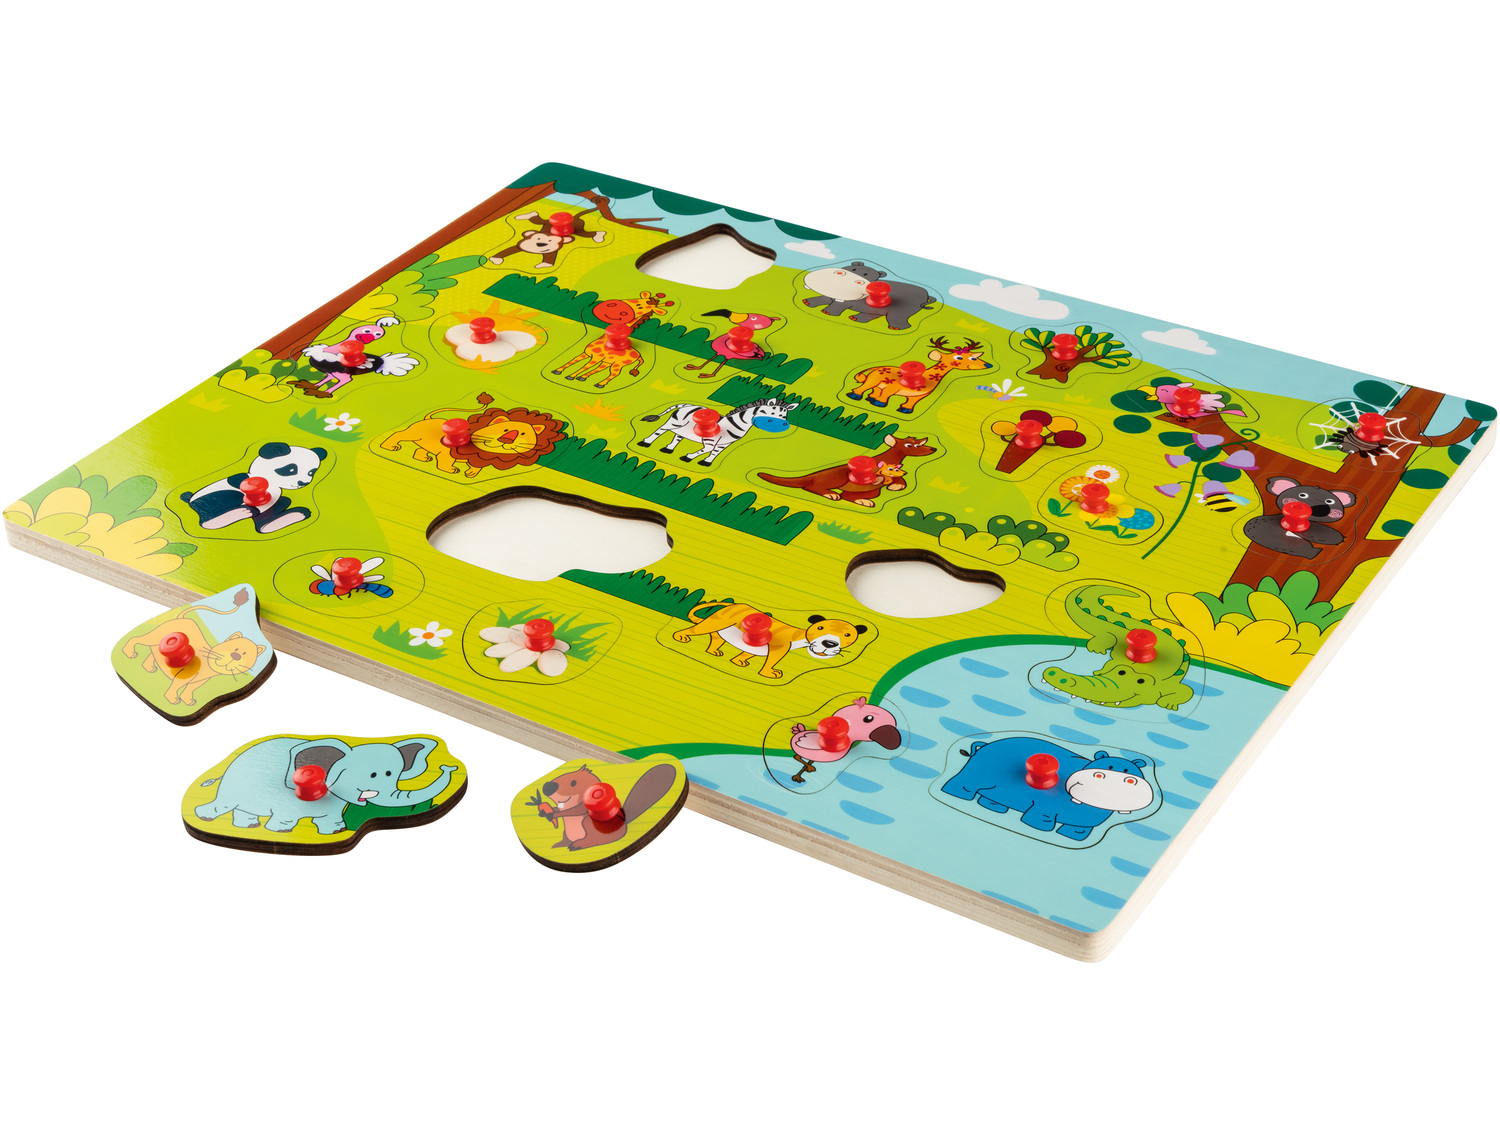 Edukacyjna zabawka drewniana Playtive Junior, cena 19,99 PLN 
5 zestawów do wyboru
Opis

- ...